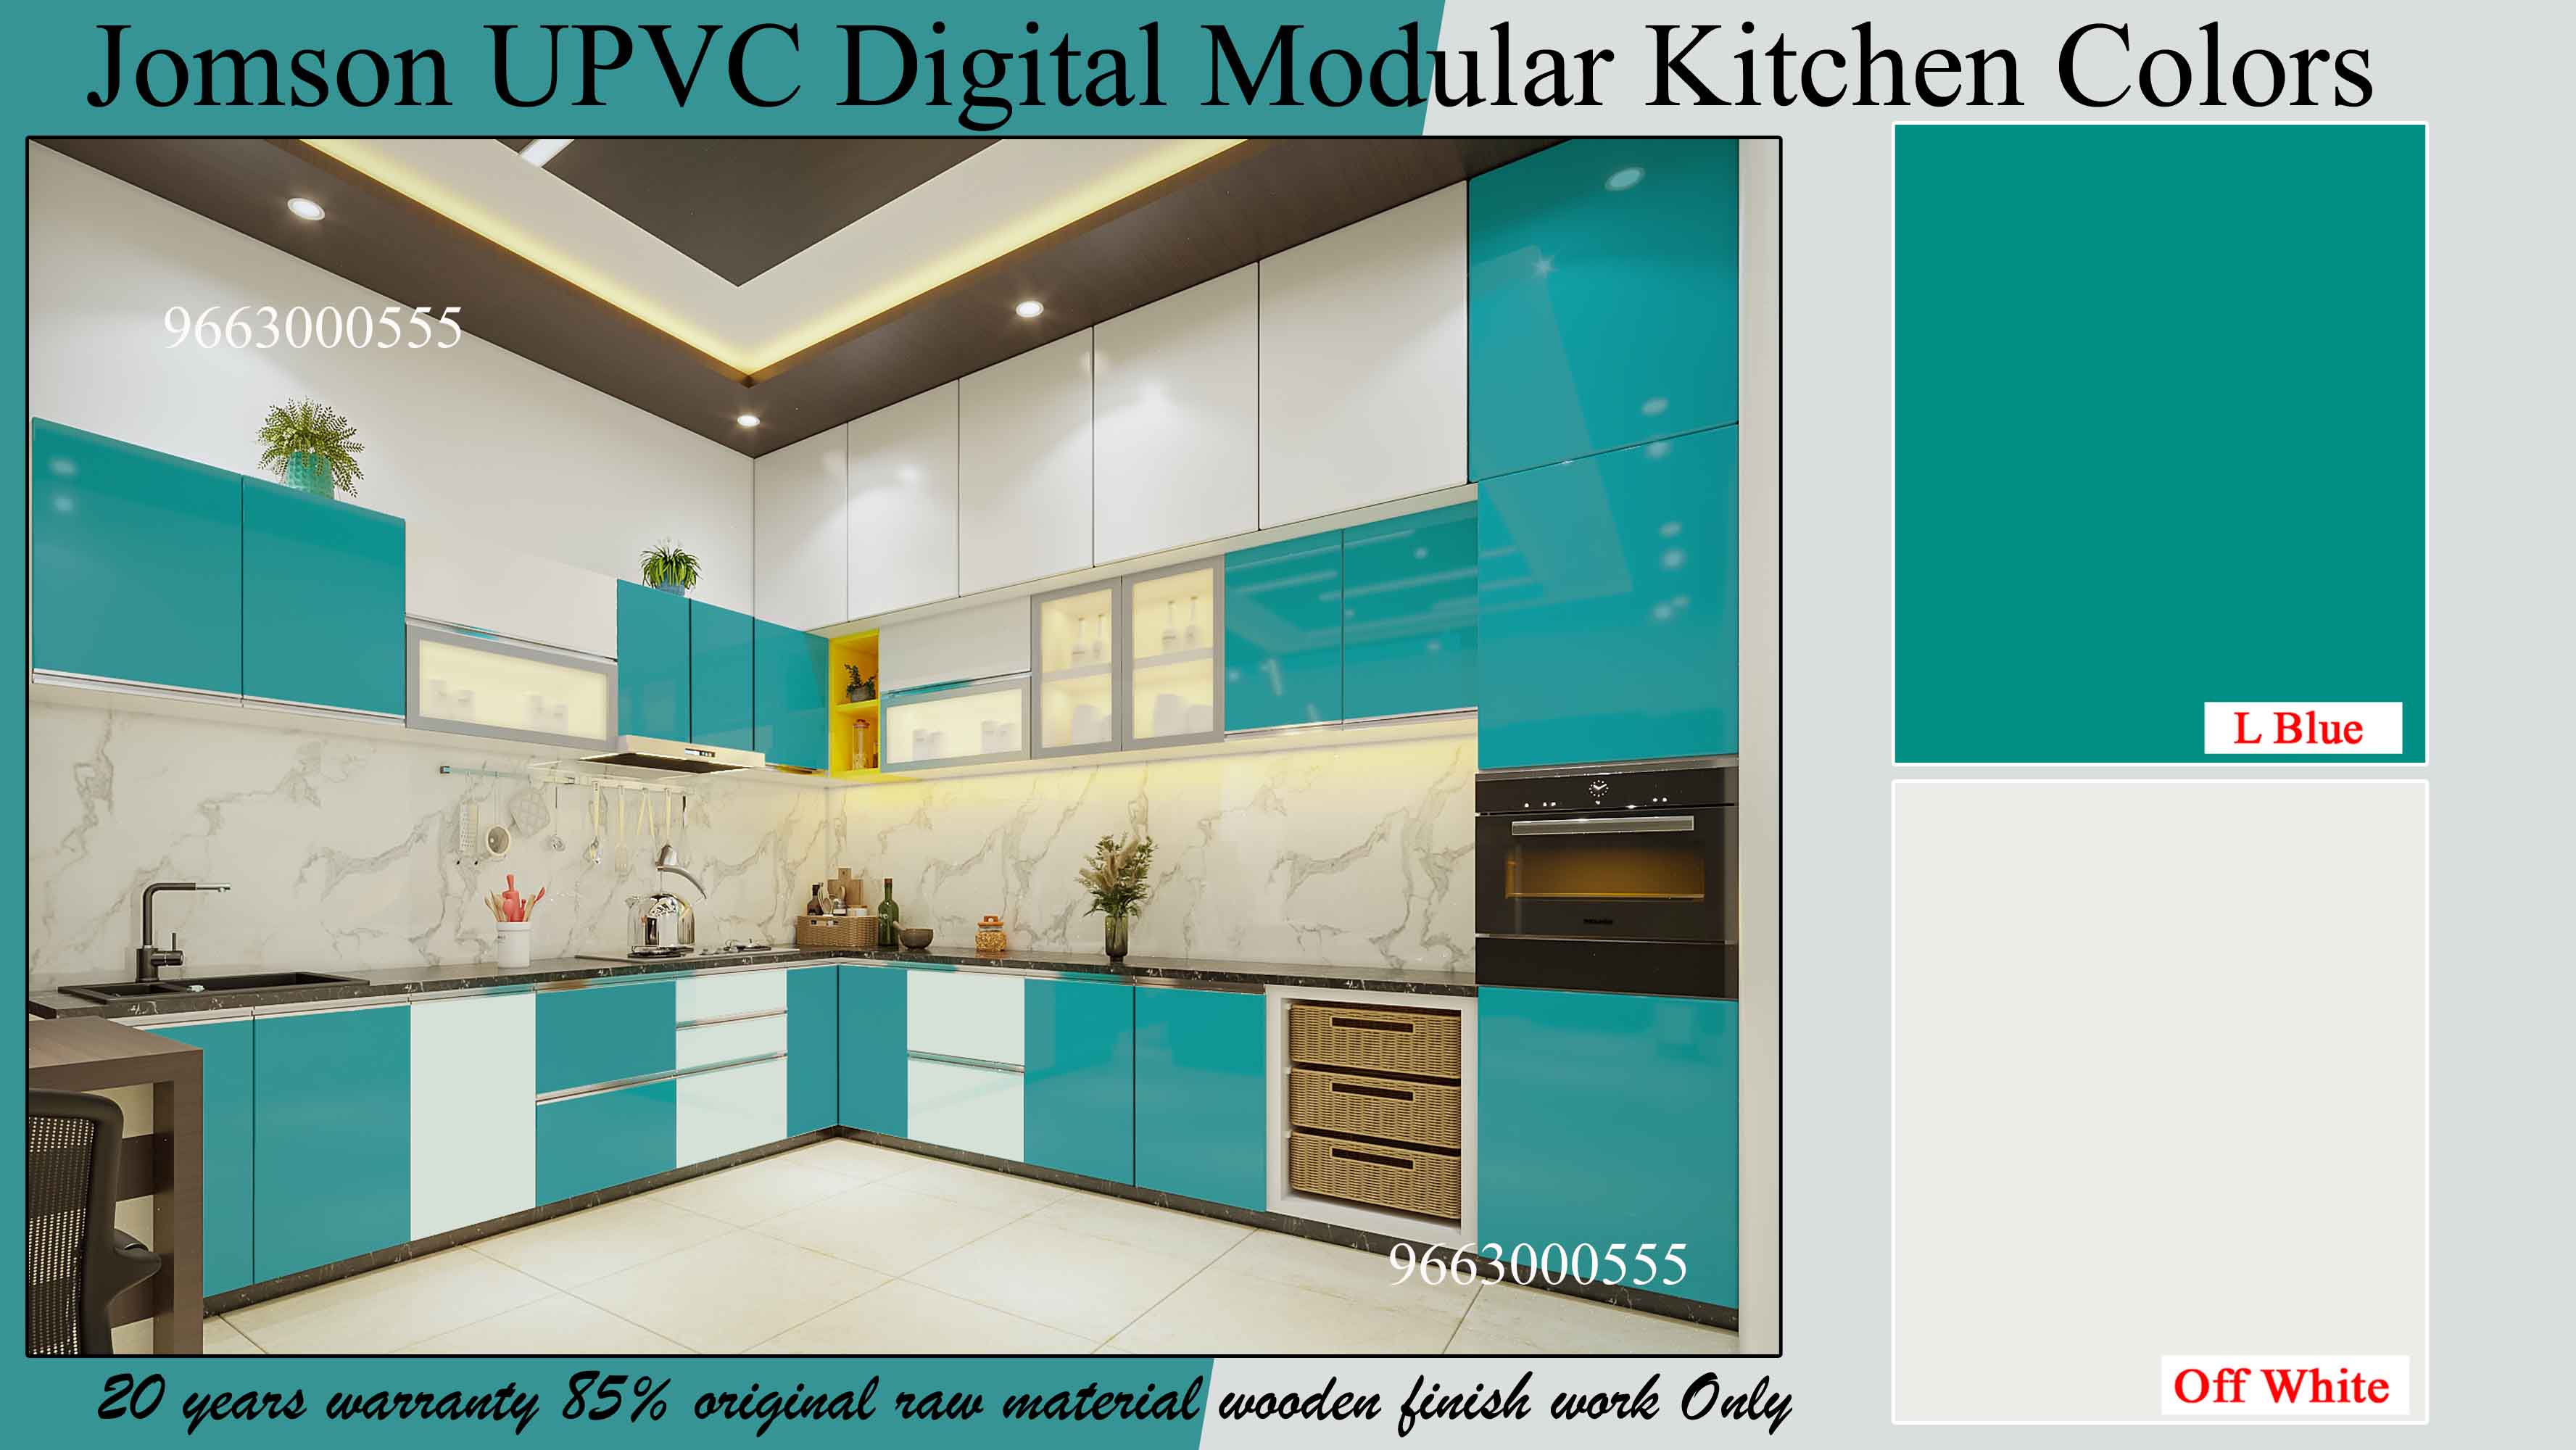 jomson upvc modular kitchen colors 